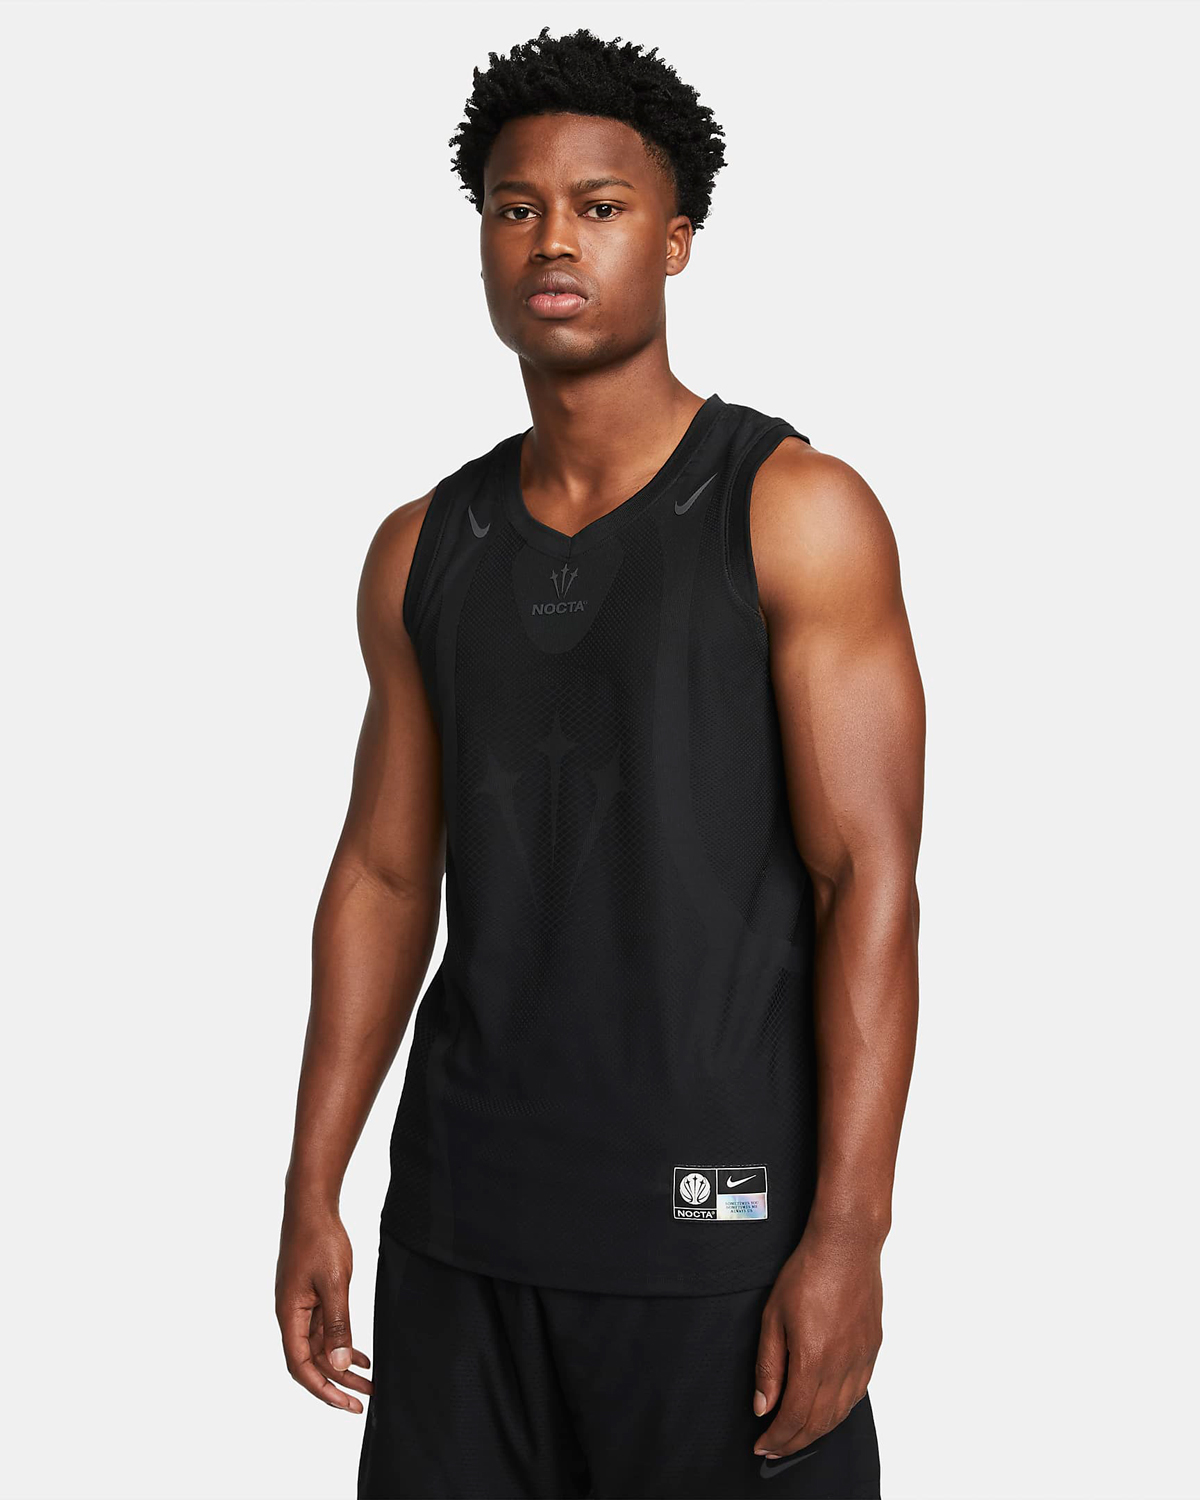 Drake-NOCTA-Nike-Basketball-Jersey-Black-1